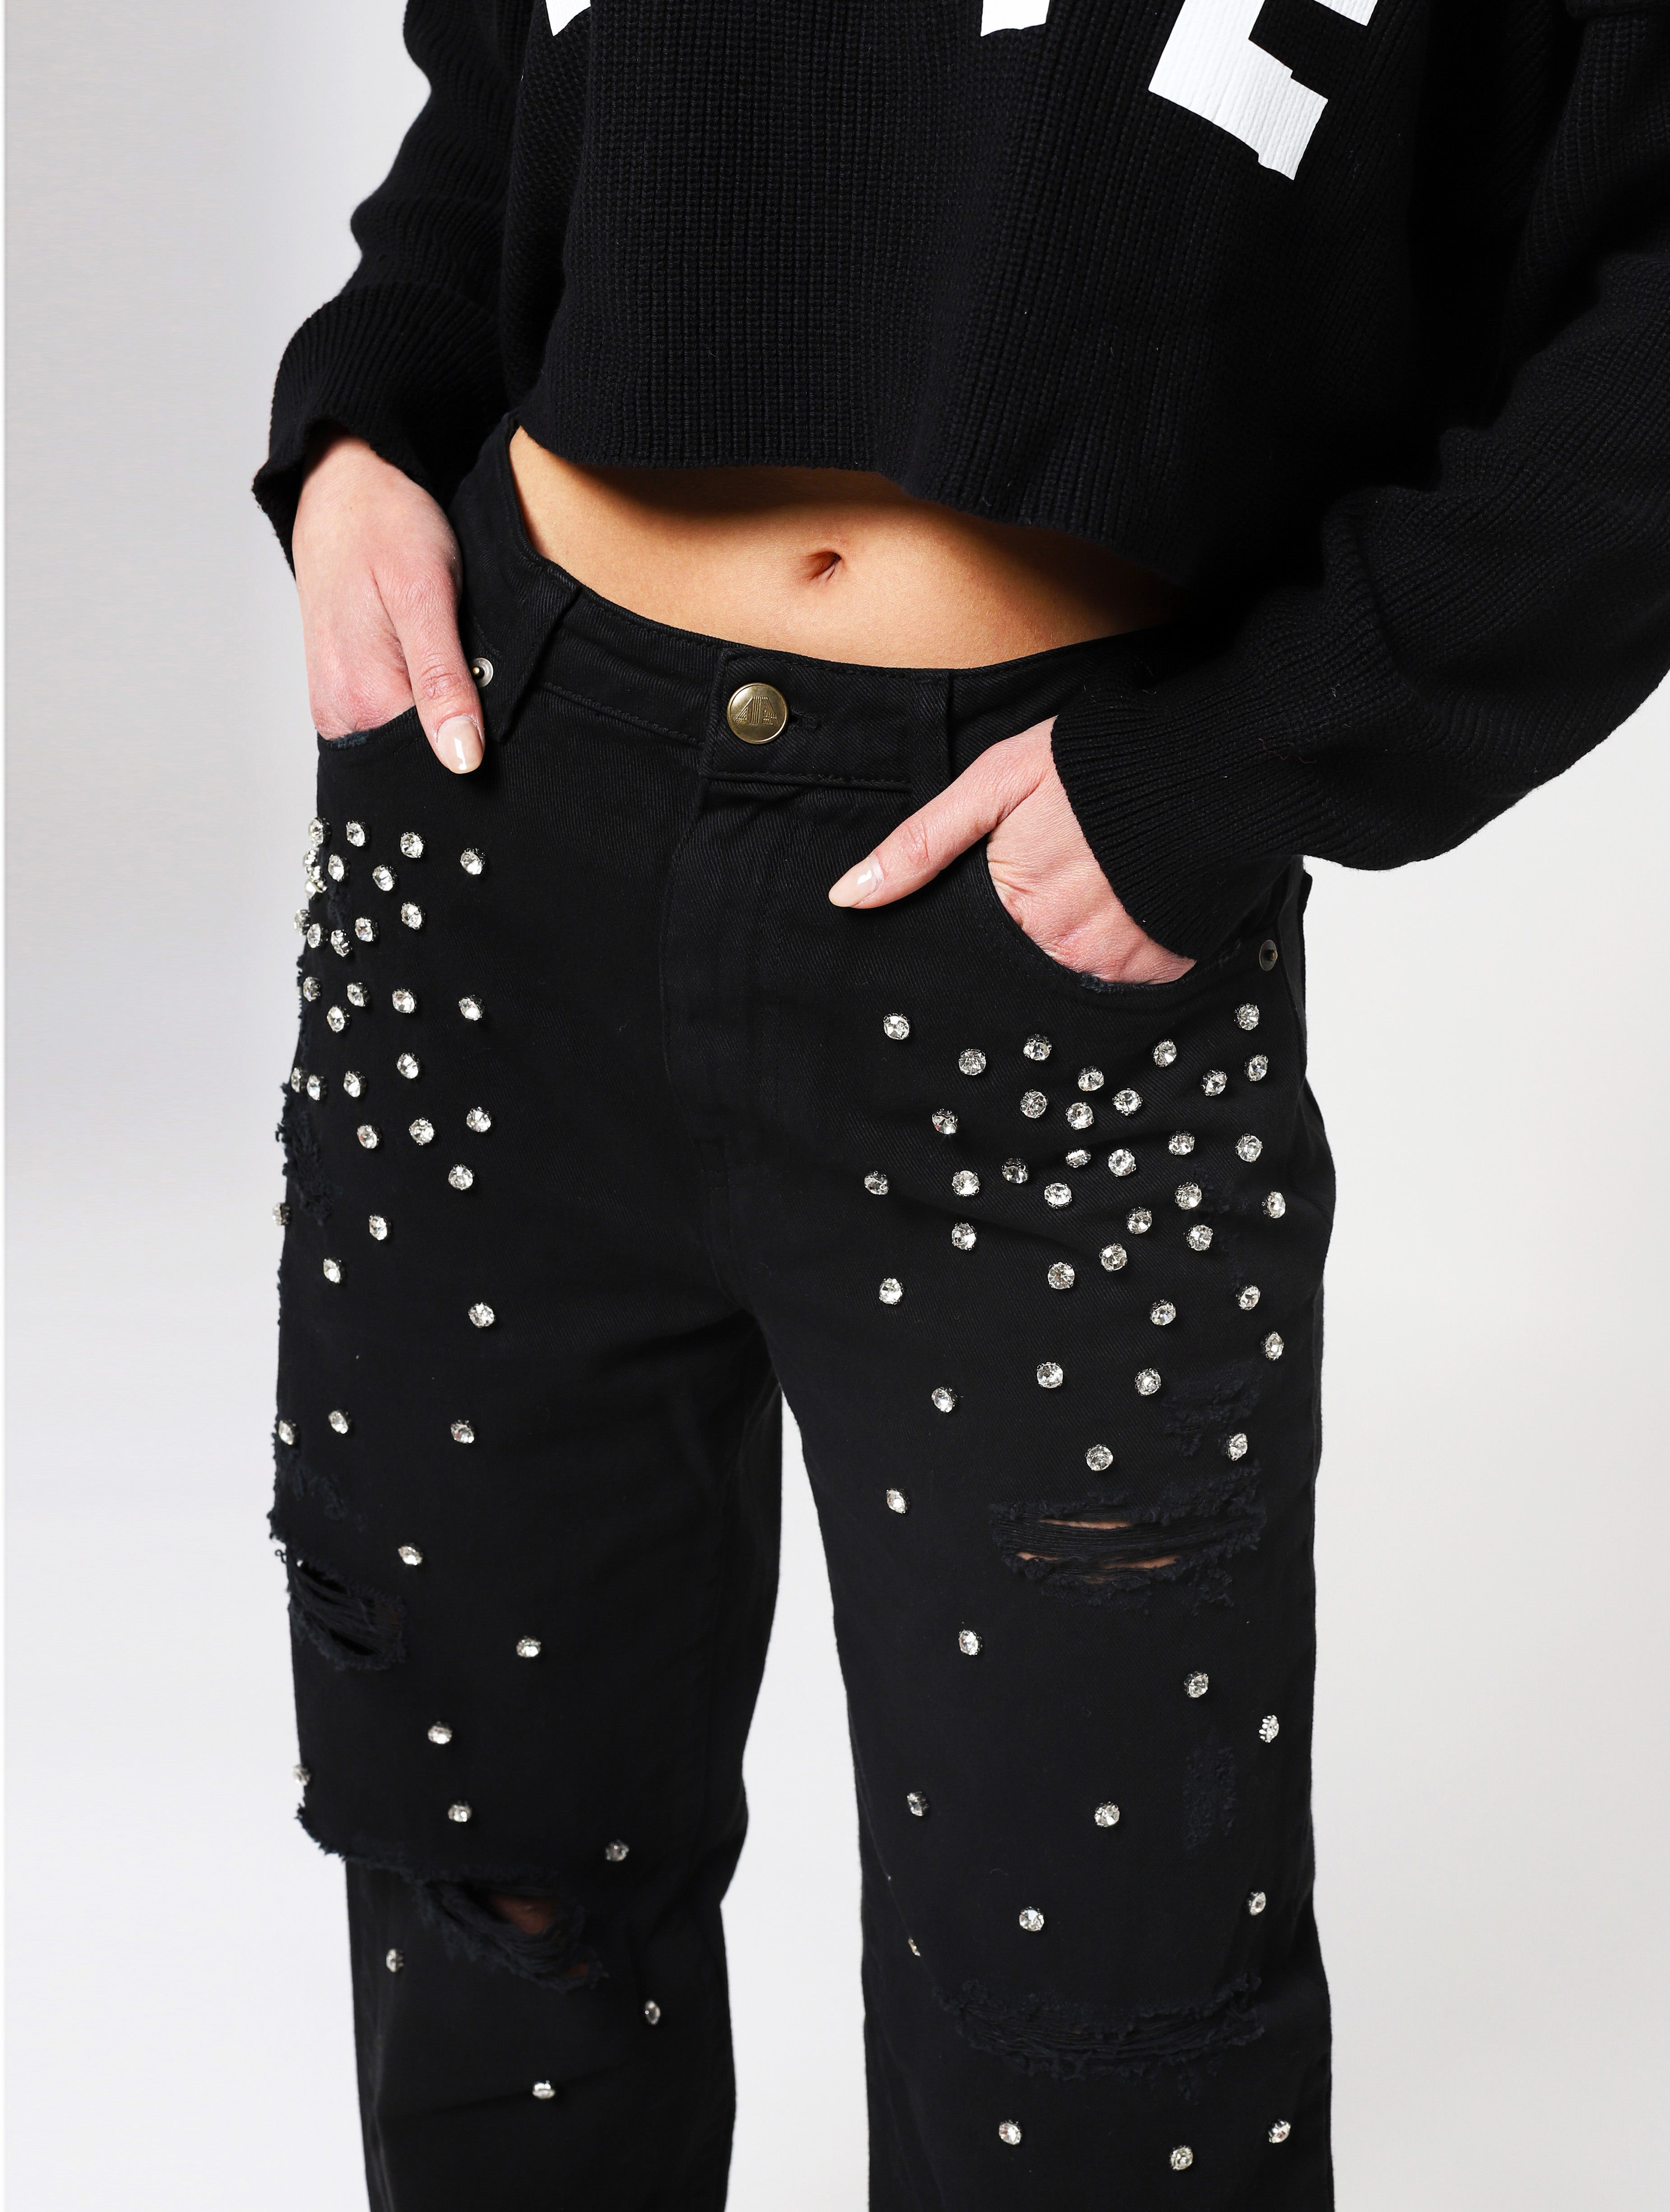 Jeans con 5 tasche, gioielli applicati e lacerazioni sulla parte frontale del pantalone, patch applicata posteriore piccola con nome del brand - nero donna  - 1